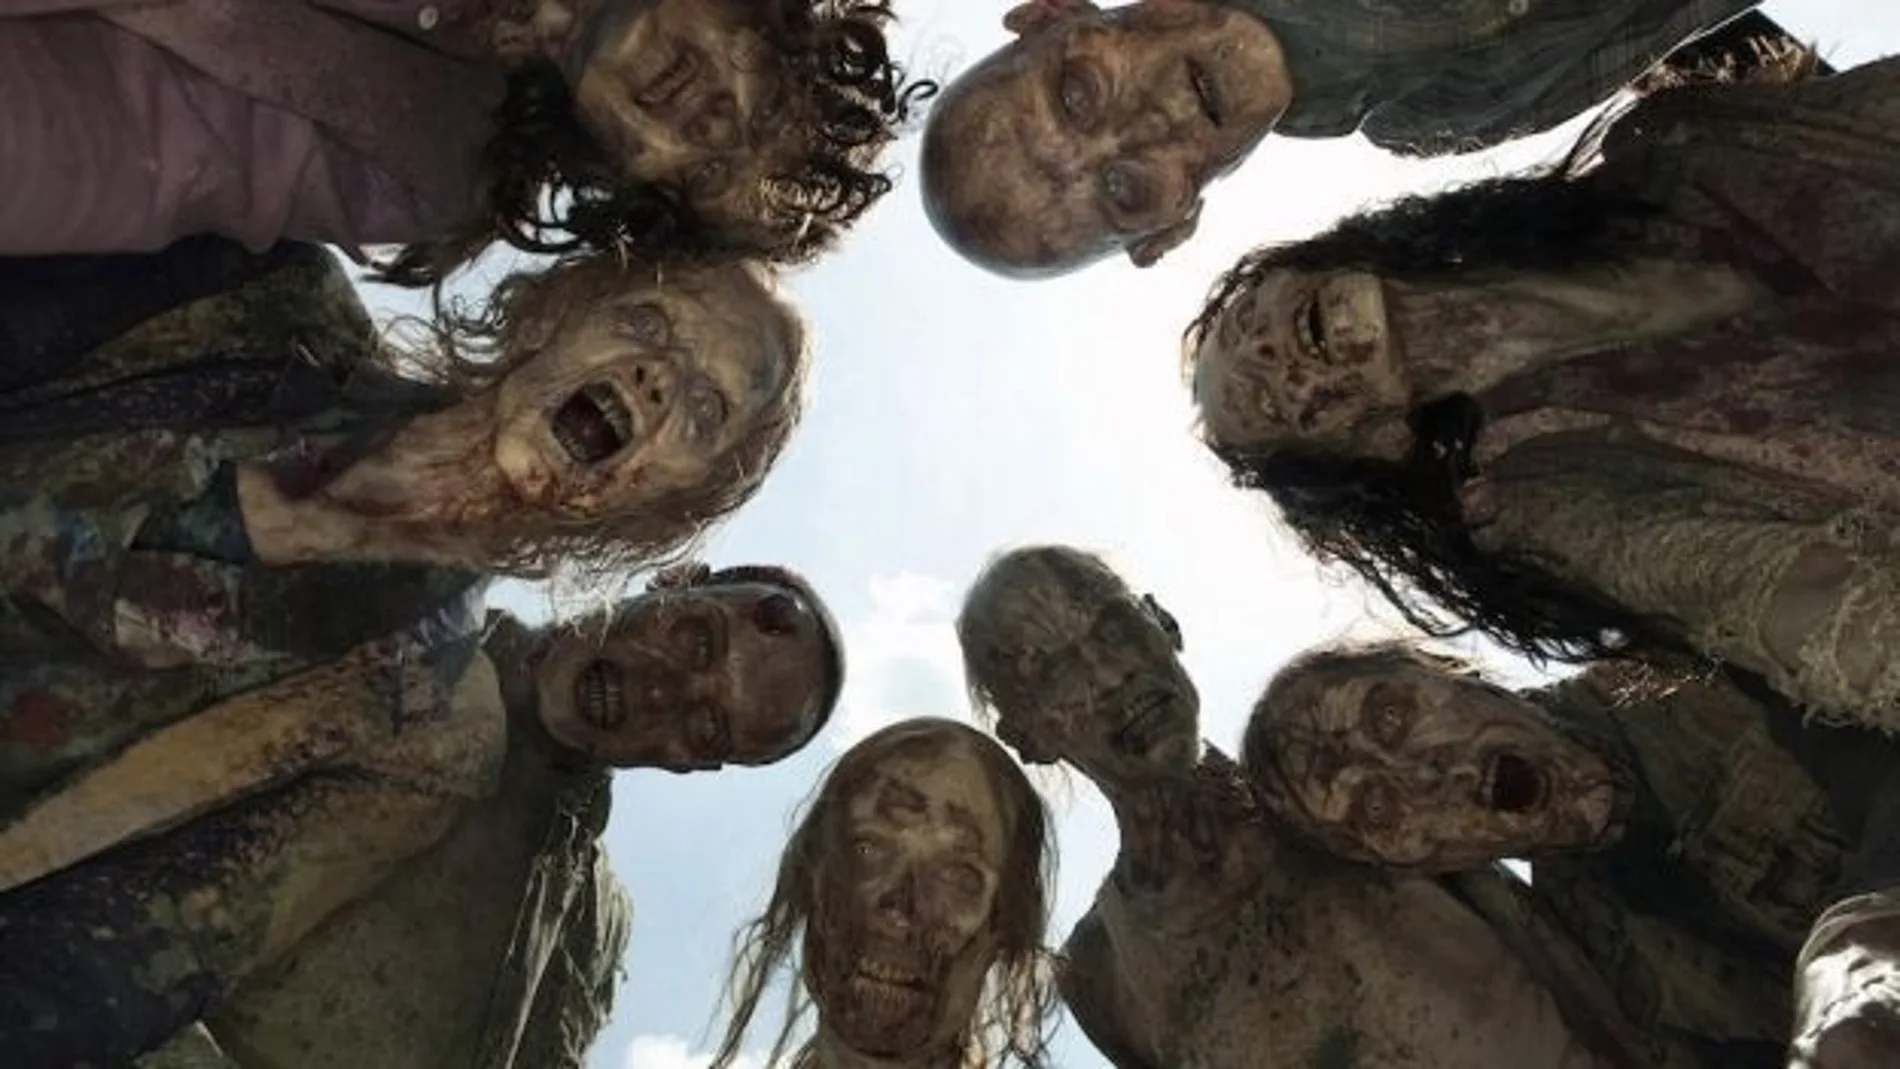 Imagen de la serie "The Walking Dead", con seres "muertos y resucitados por brujería"o que están "atontados"